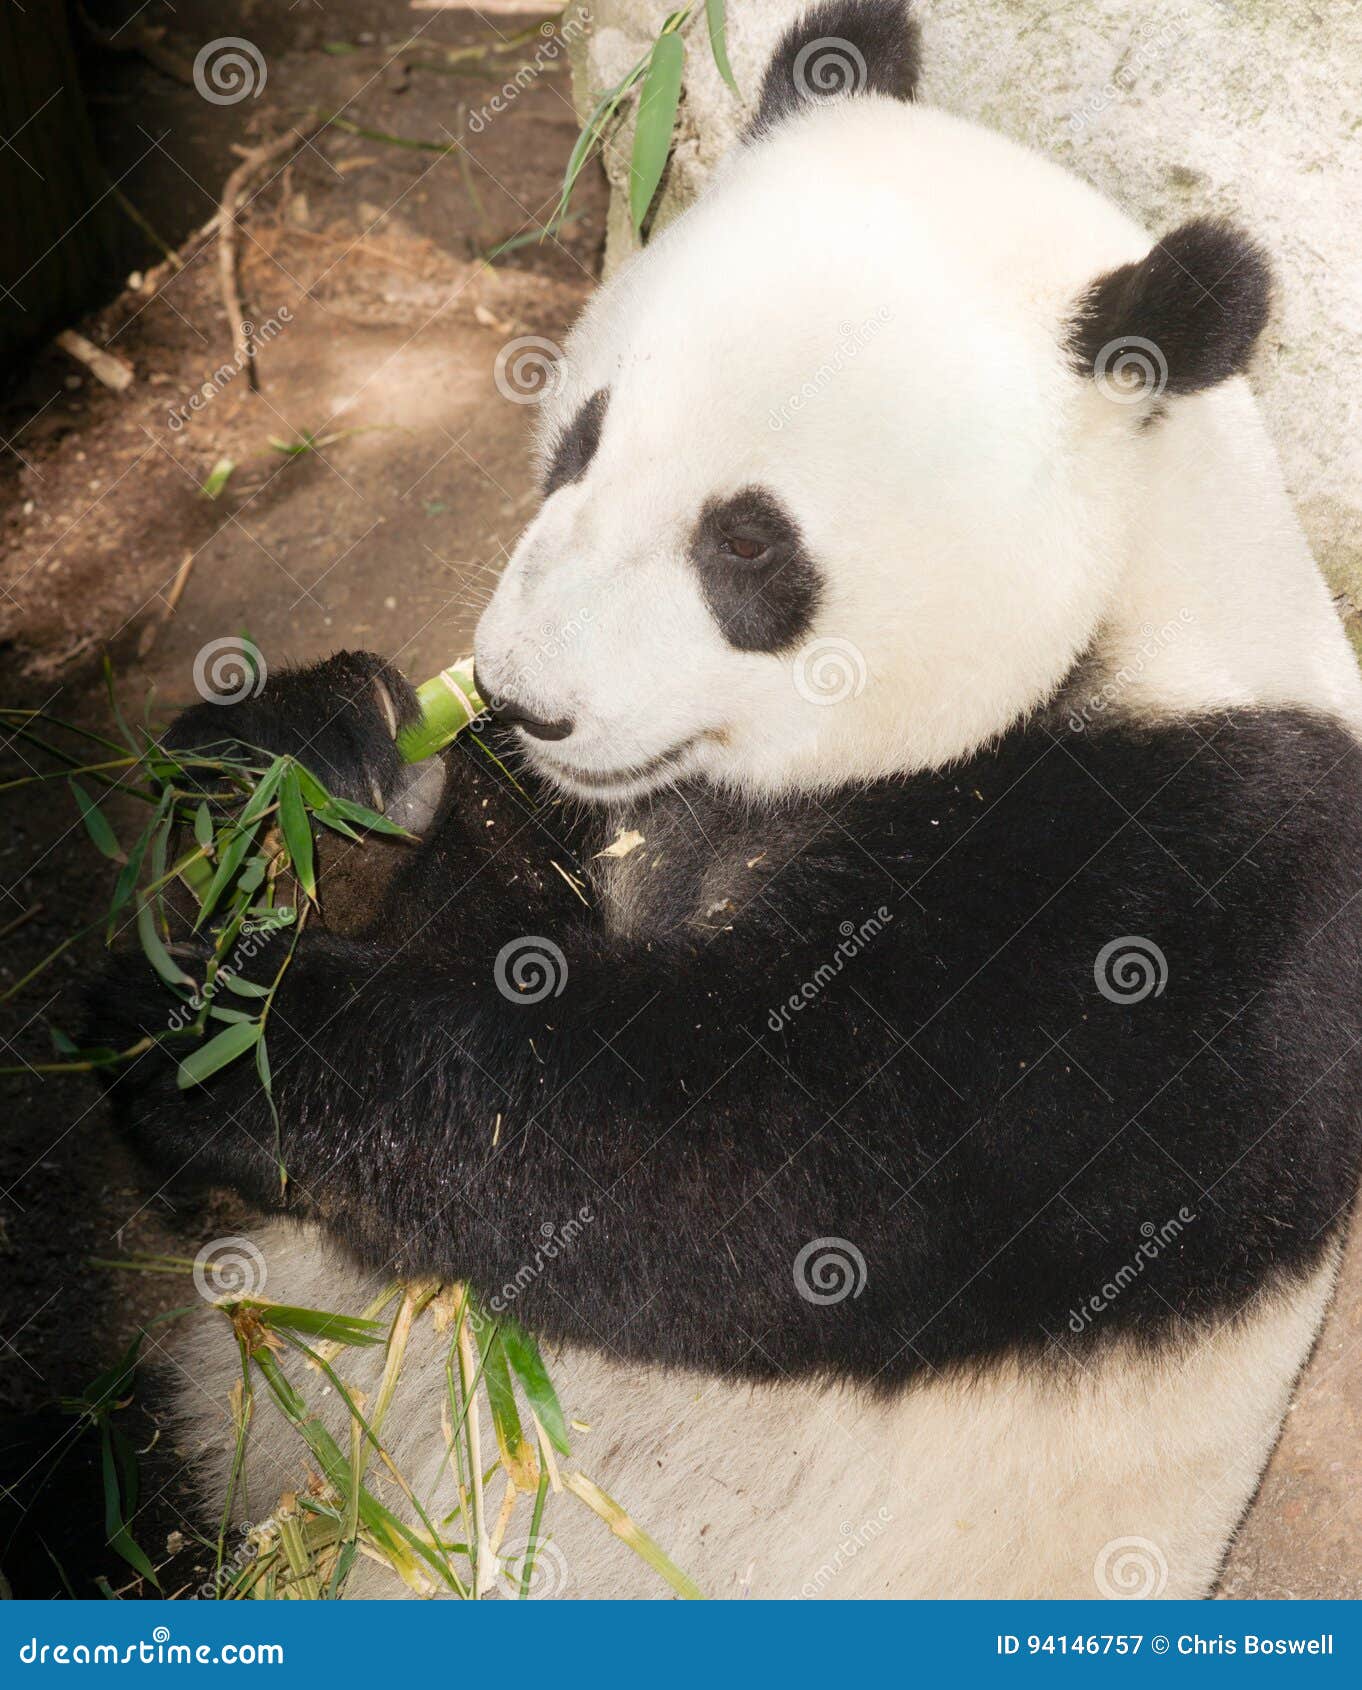 Endangered Giant Panda Eating Bamboo Stalk Stock Image Image Of Panda